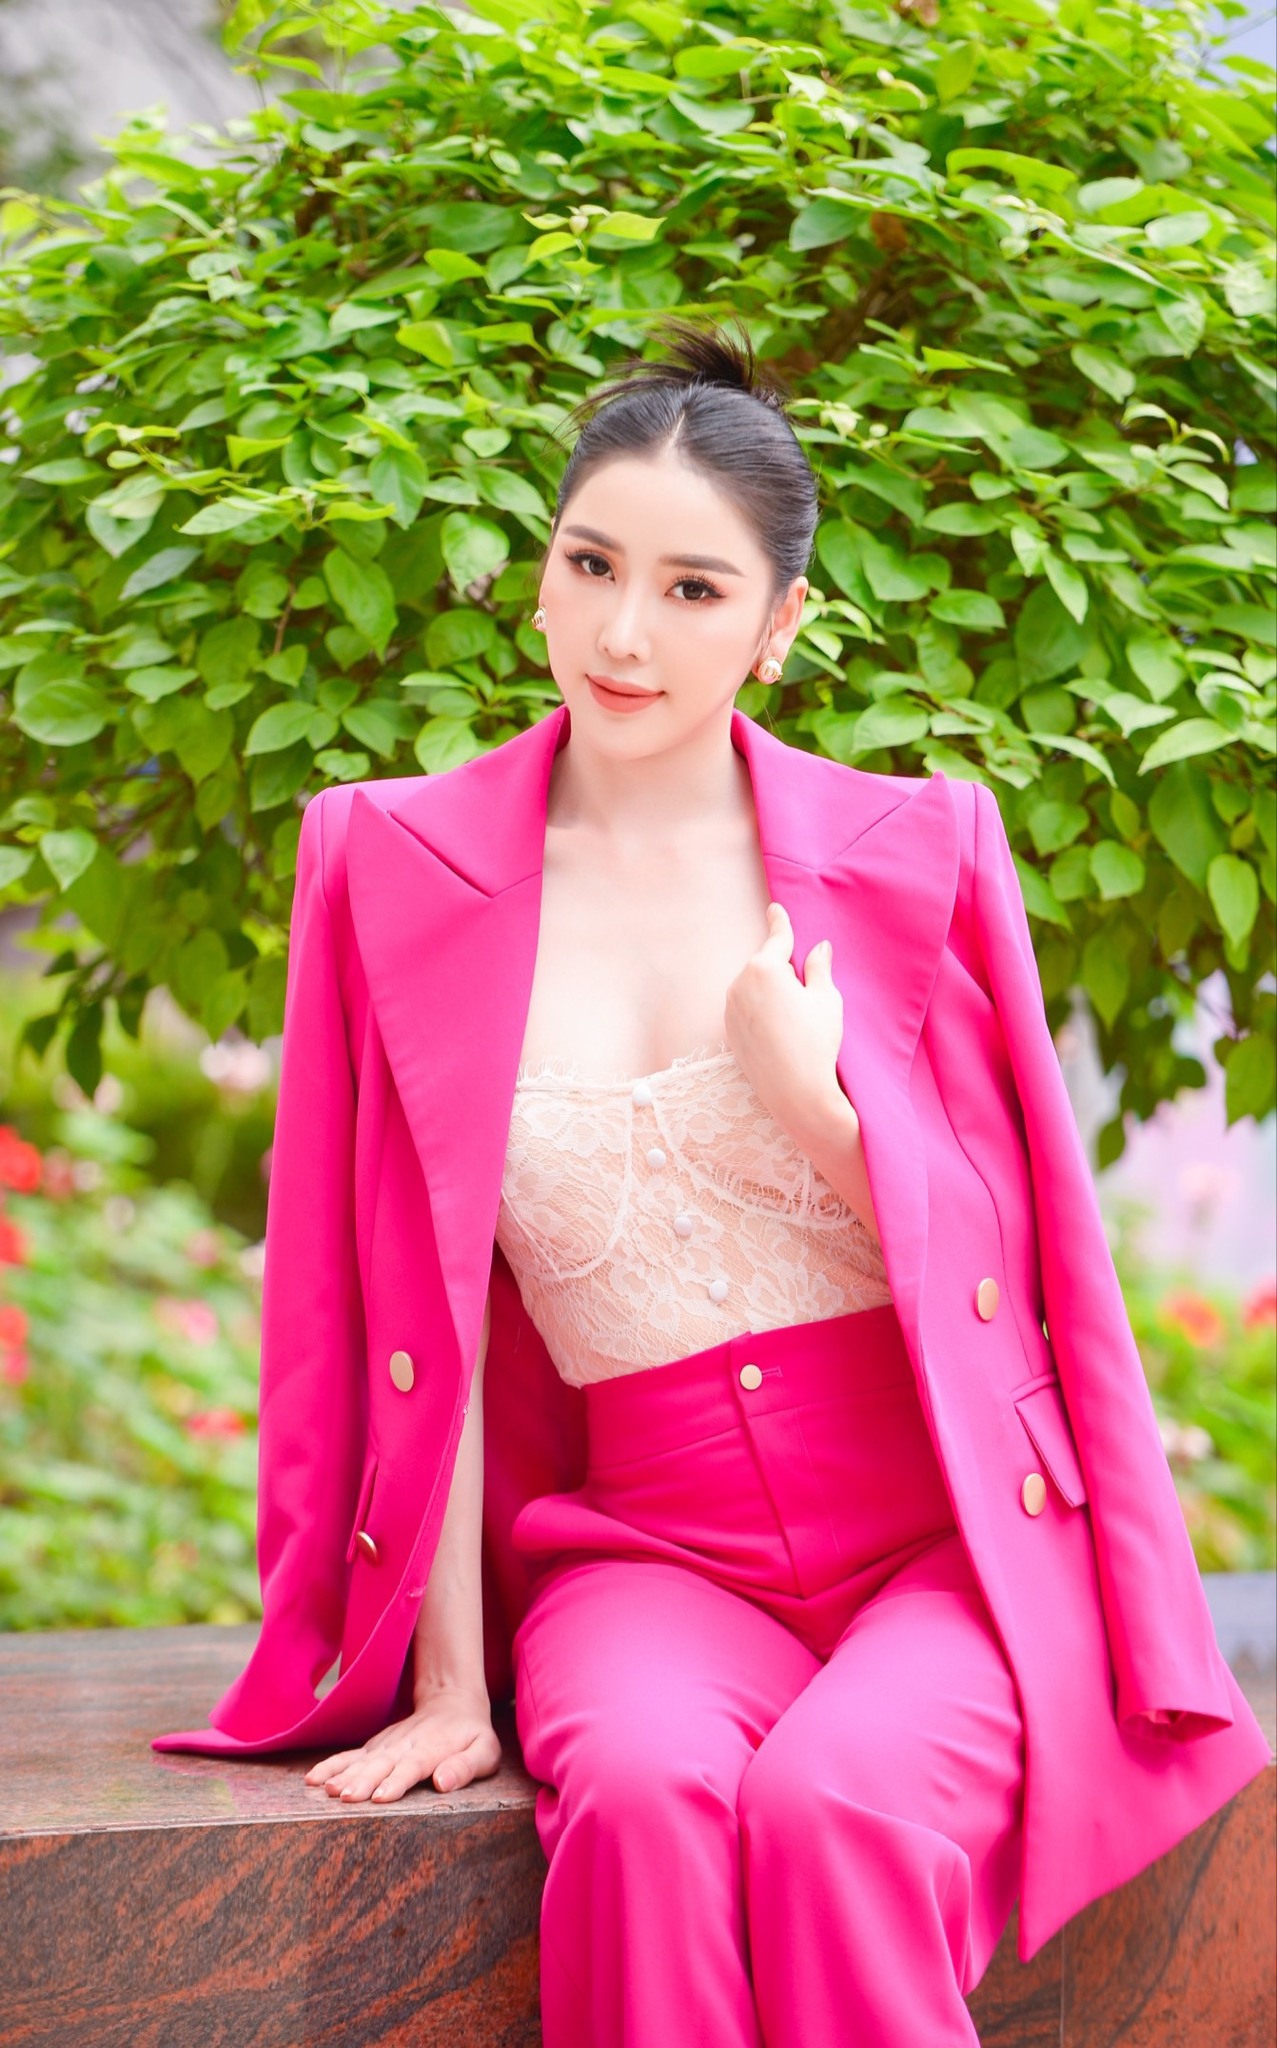 Chân dung Hoa hậu Thế giới người Việt 2022 Trịnh Thanh Hồng - Ảnh 5.